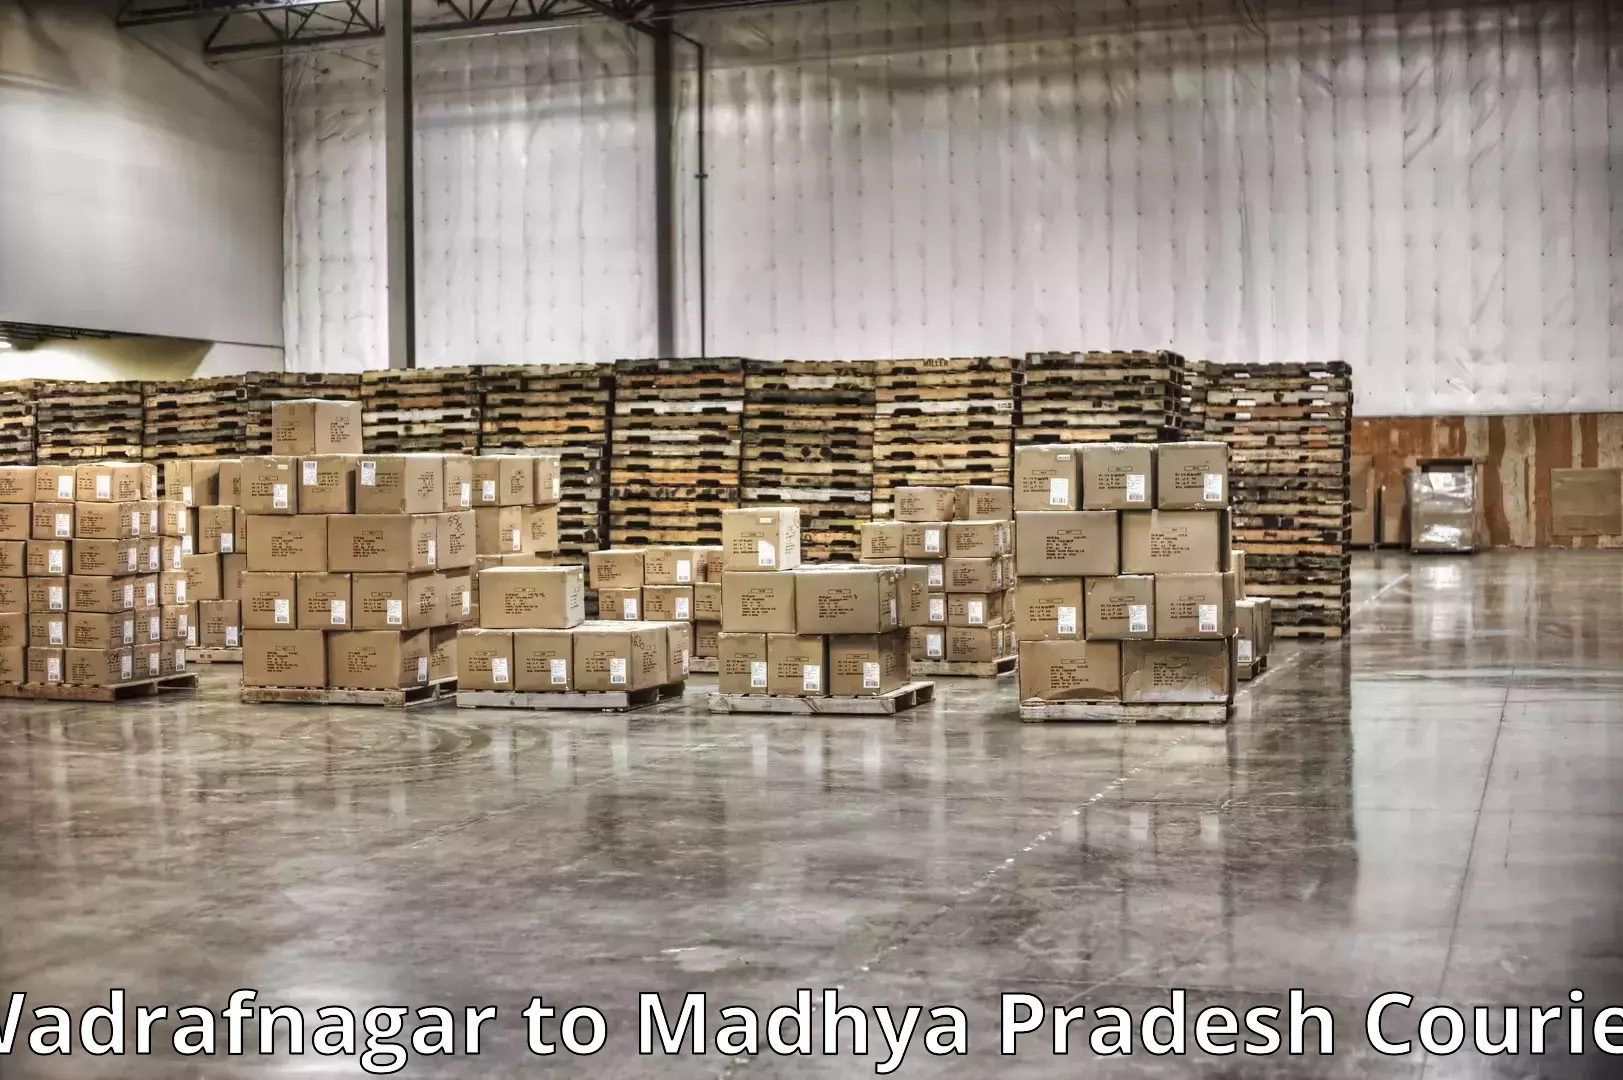 Custom furniture transport in Wadrafnagar to Ranchha